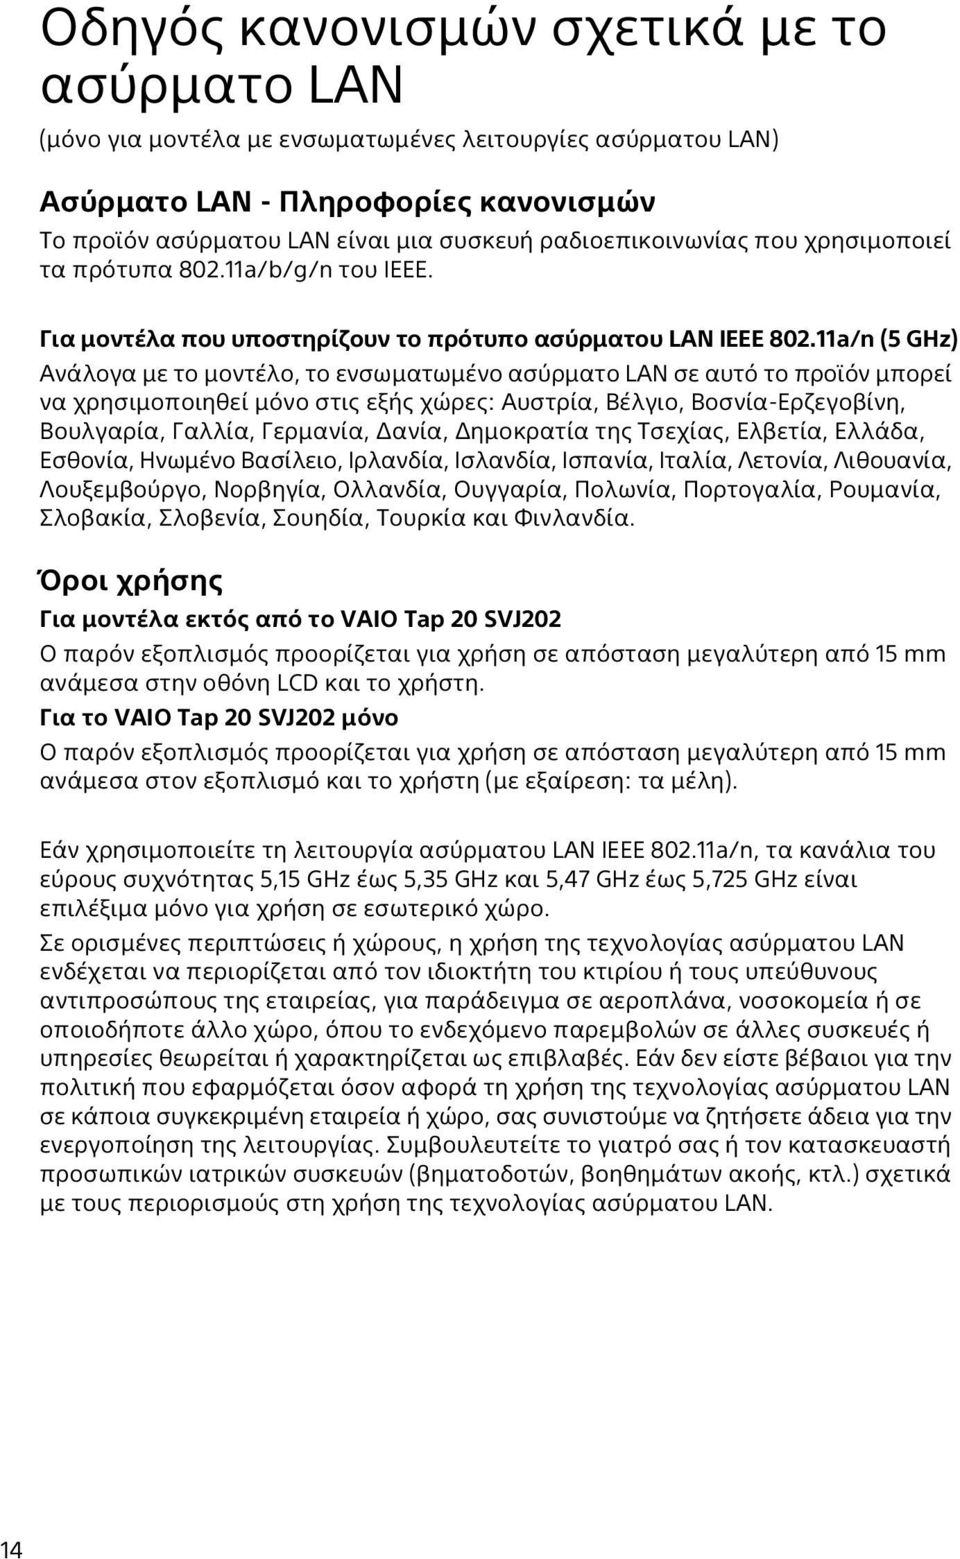 11a/n (5 GHz) Ανάλογα με το μοντέλο, το ενσωματωμένο ασύρματο LAN σε αυτό το προϊόν μπορεί να χρησιμοποιηθεί μόνο στις εξής χώρες: Αυστρία, Βέλγιο, Βοσνία-Ερζεγοβίνη, Βουλγαρία, Γαλλία, Γερμανία,